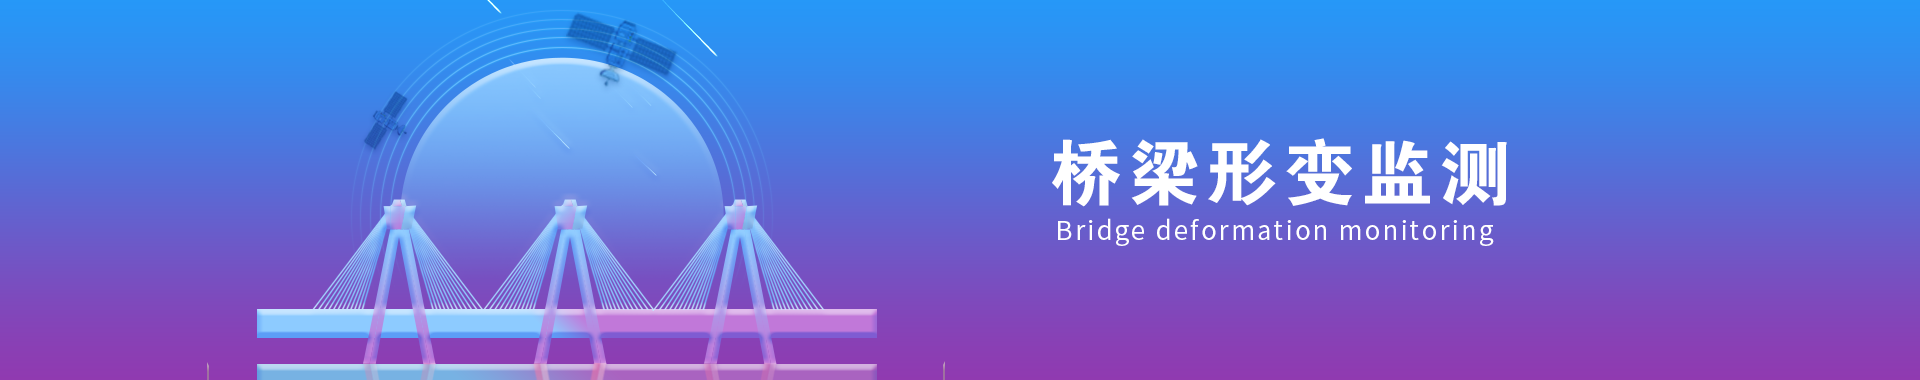 橋梁